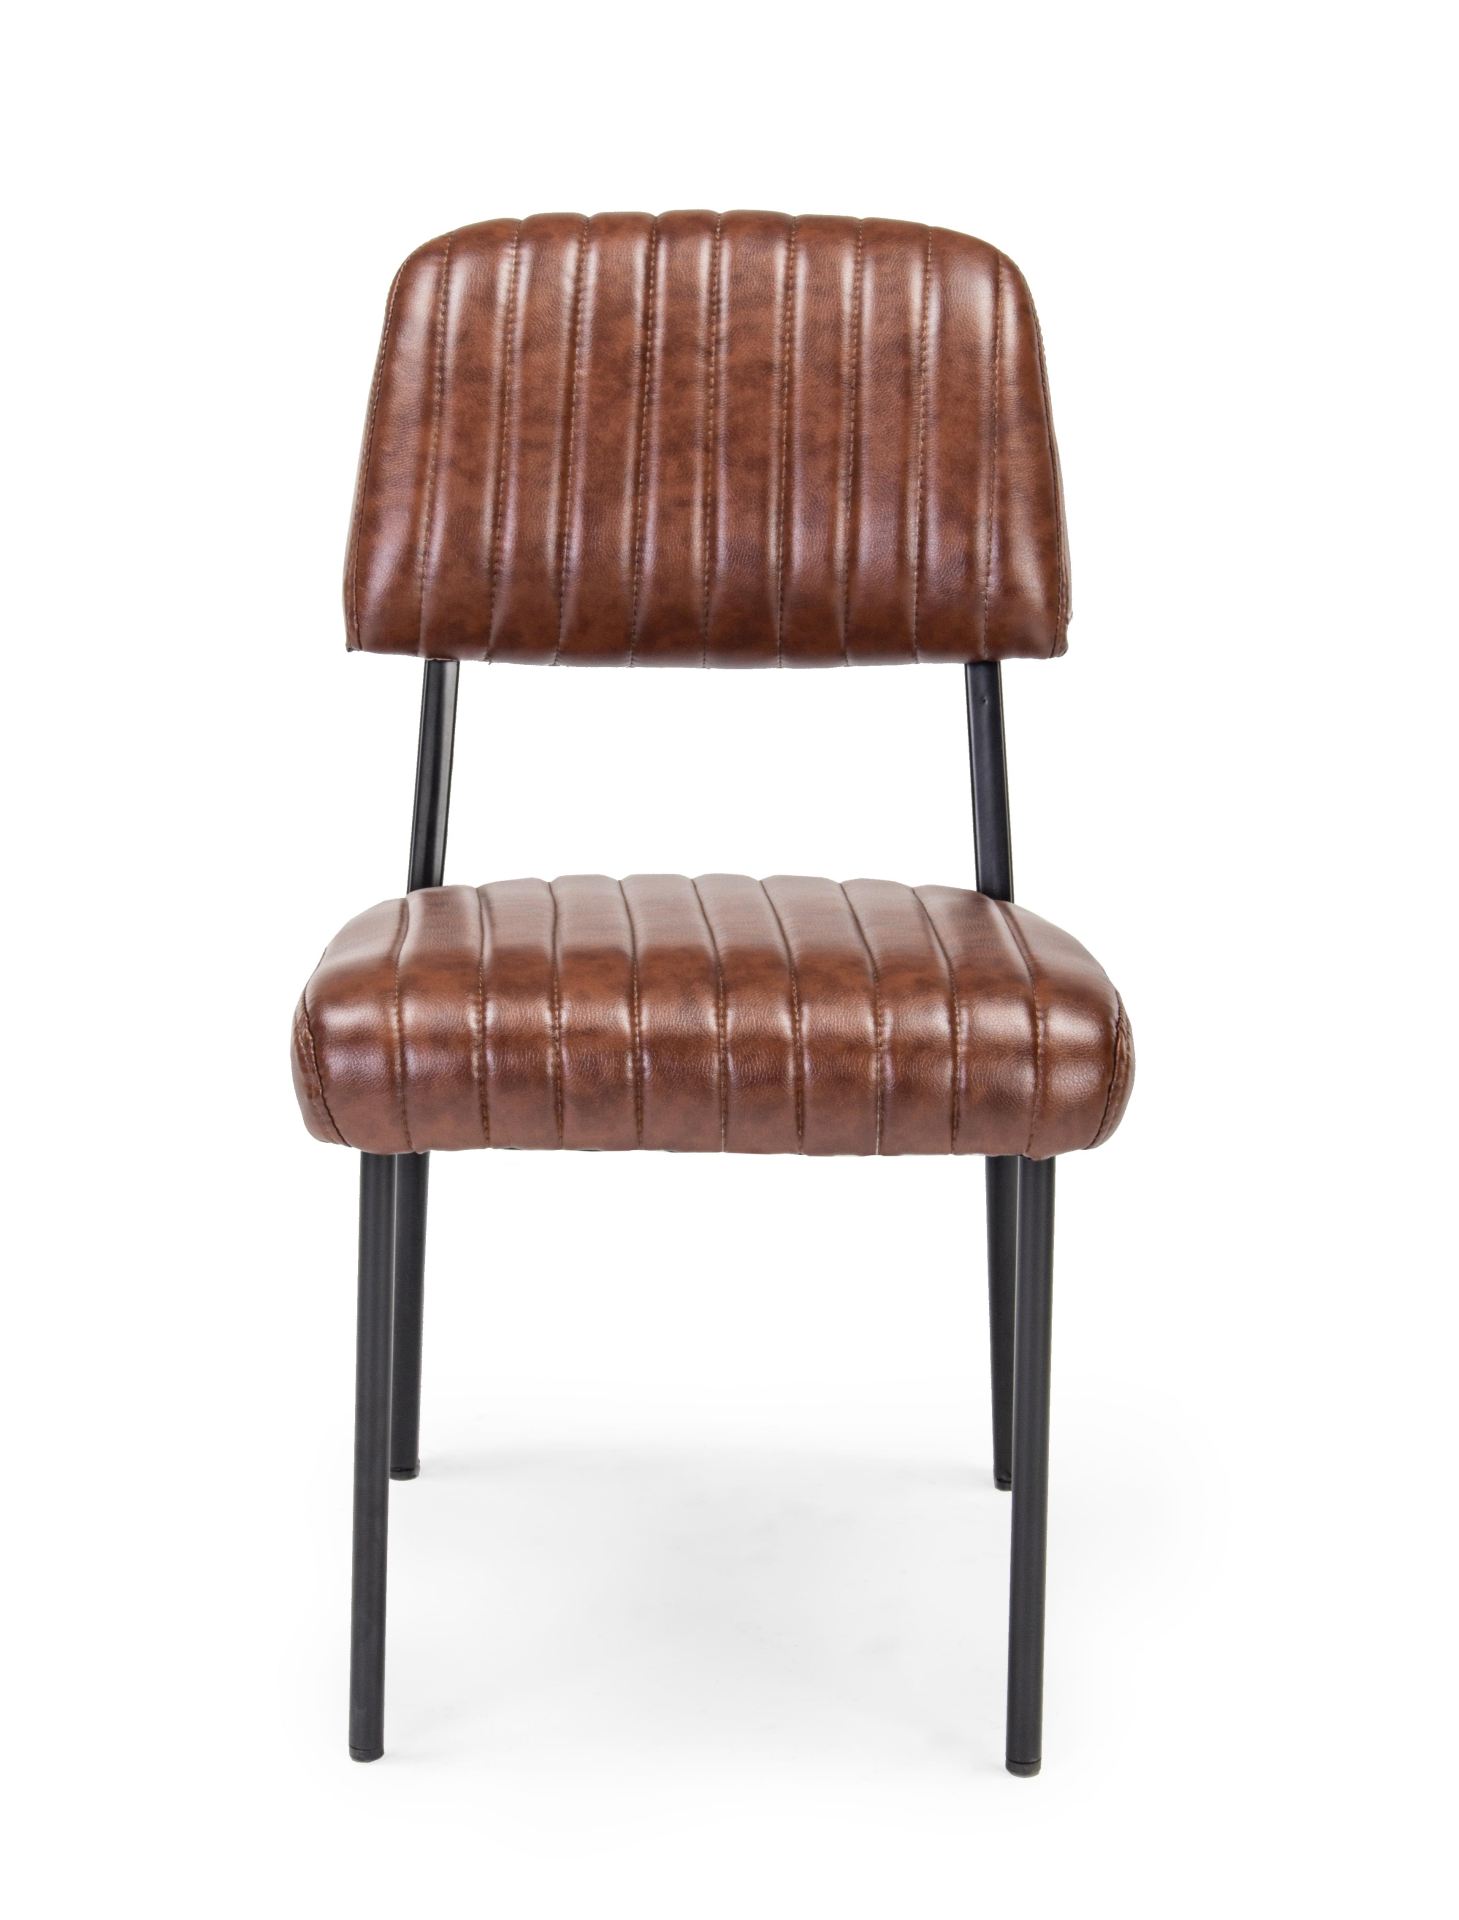 Der Stuhl Nelly überzeugt mit seinem industriellen Design. Gefertigt wurde der Stuhl aus Kunstleder, welches einen Cognac Farbton besitzt. Das Gestell ist aus Stahl und ist schwarz. Die Sitzhöhe beträgt 45 cm.